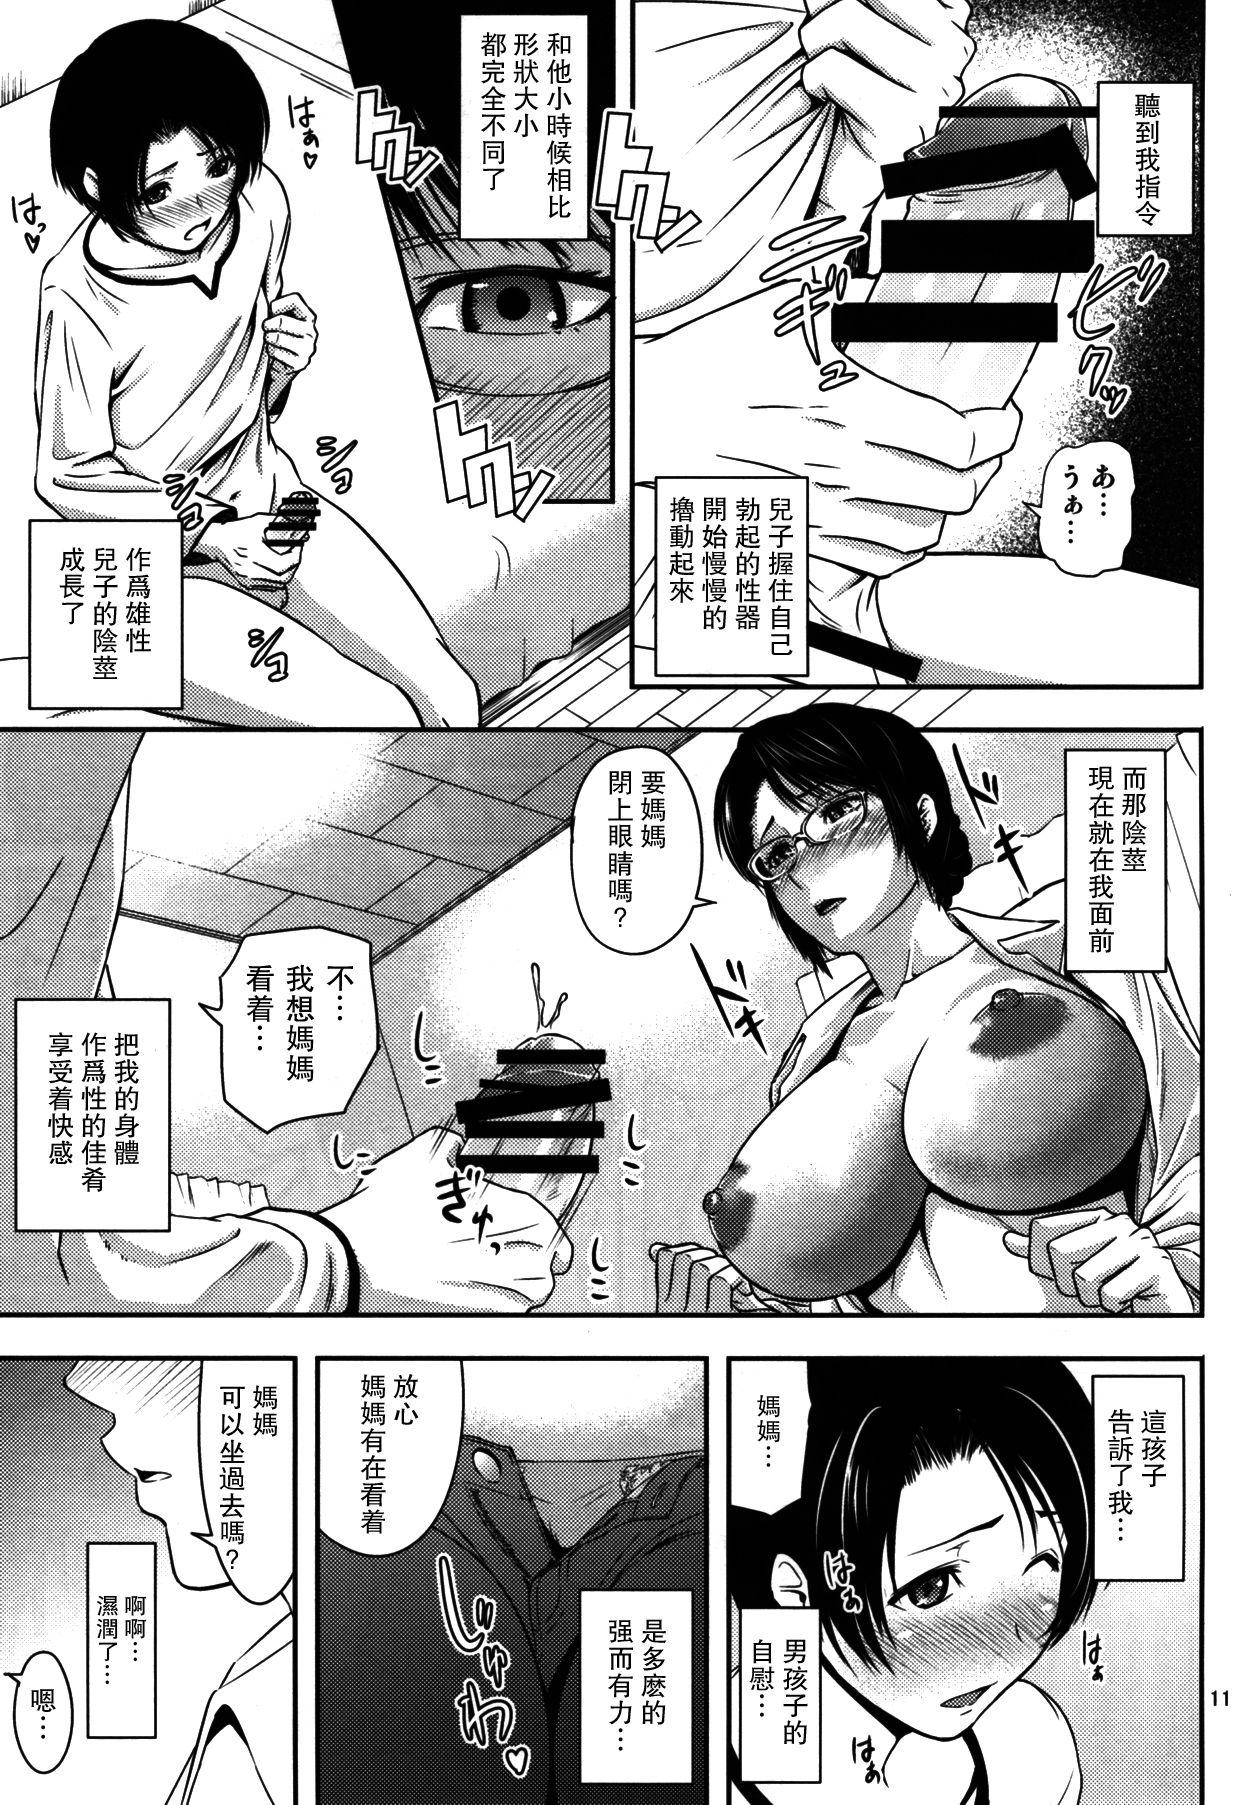 Old Boketsu o Horu 18 - Original Gagging - Page 10